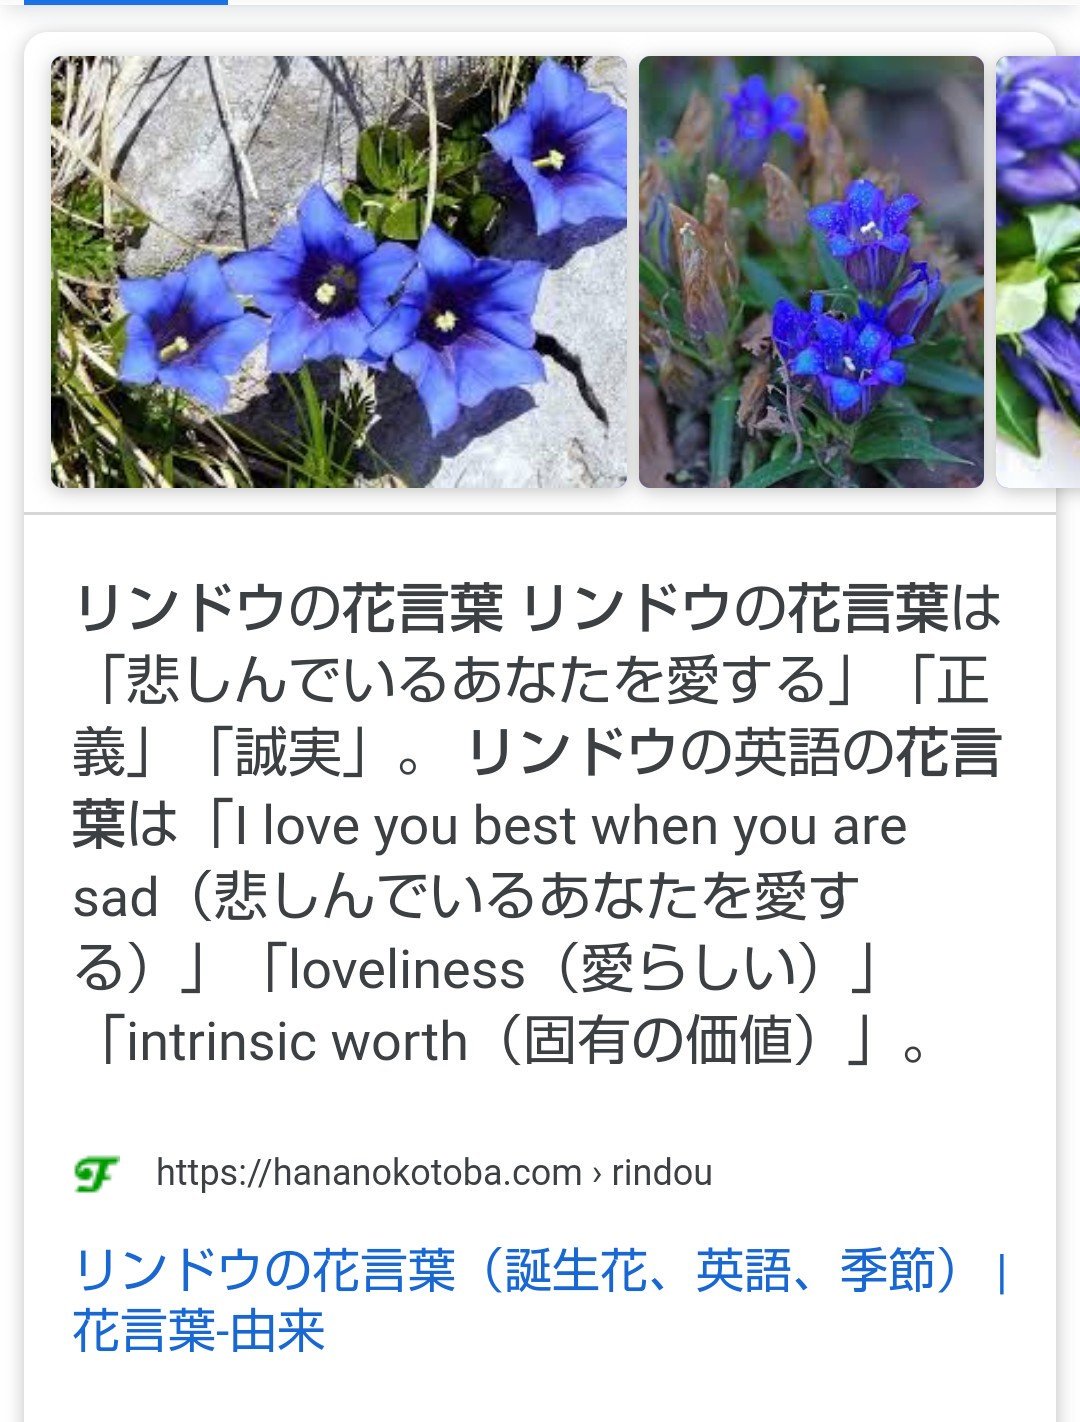 みやの Twitterren 鬼太郎さんがねこちゃんにあげた花 りんどうかな 悲しんでるあなたを愛する 誠実 T Co F3dhgftur3 Twitter